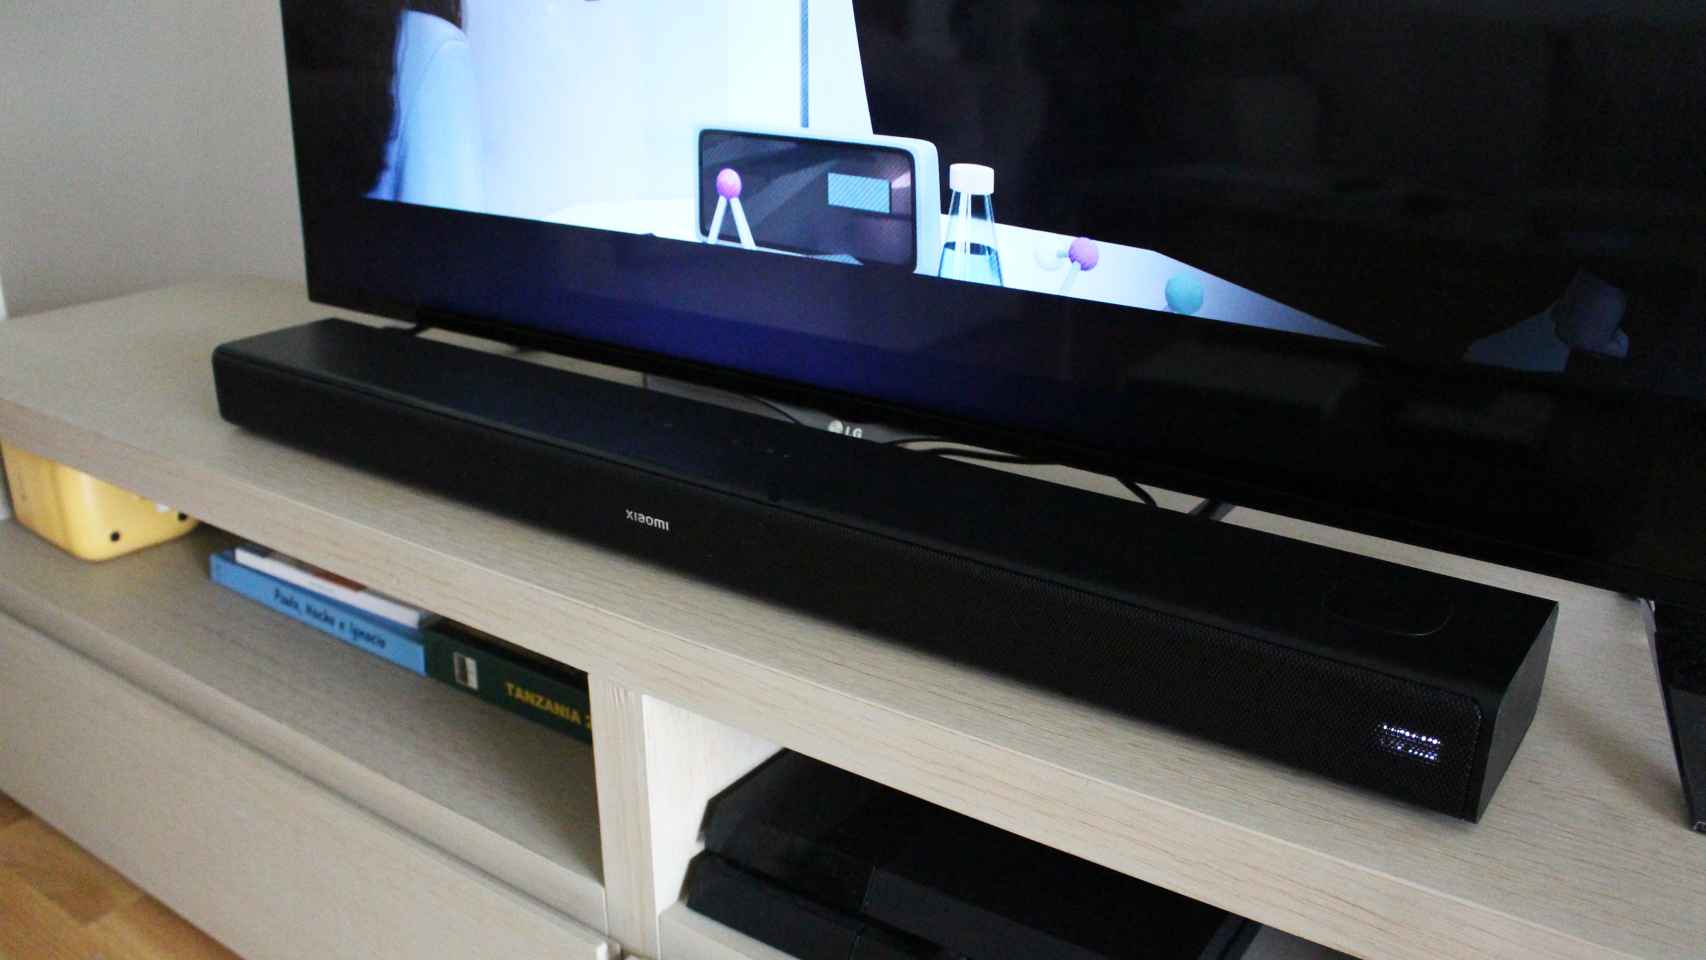 La Xiaomi Soundbar 3.1ch colocada justo entre las patas del televisor.